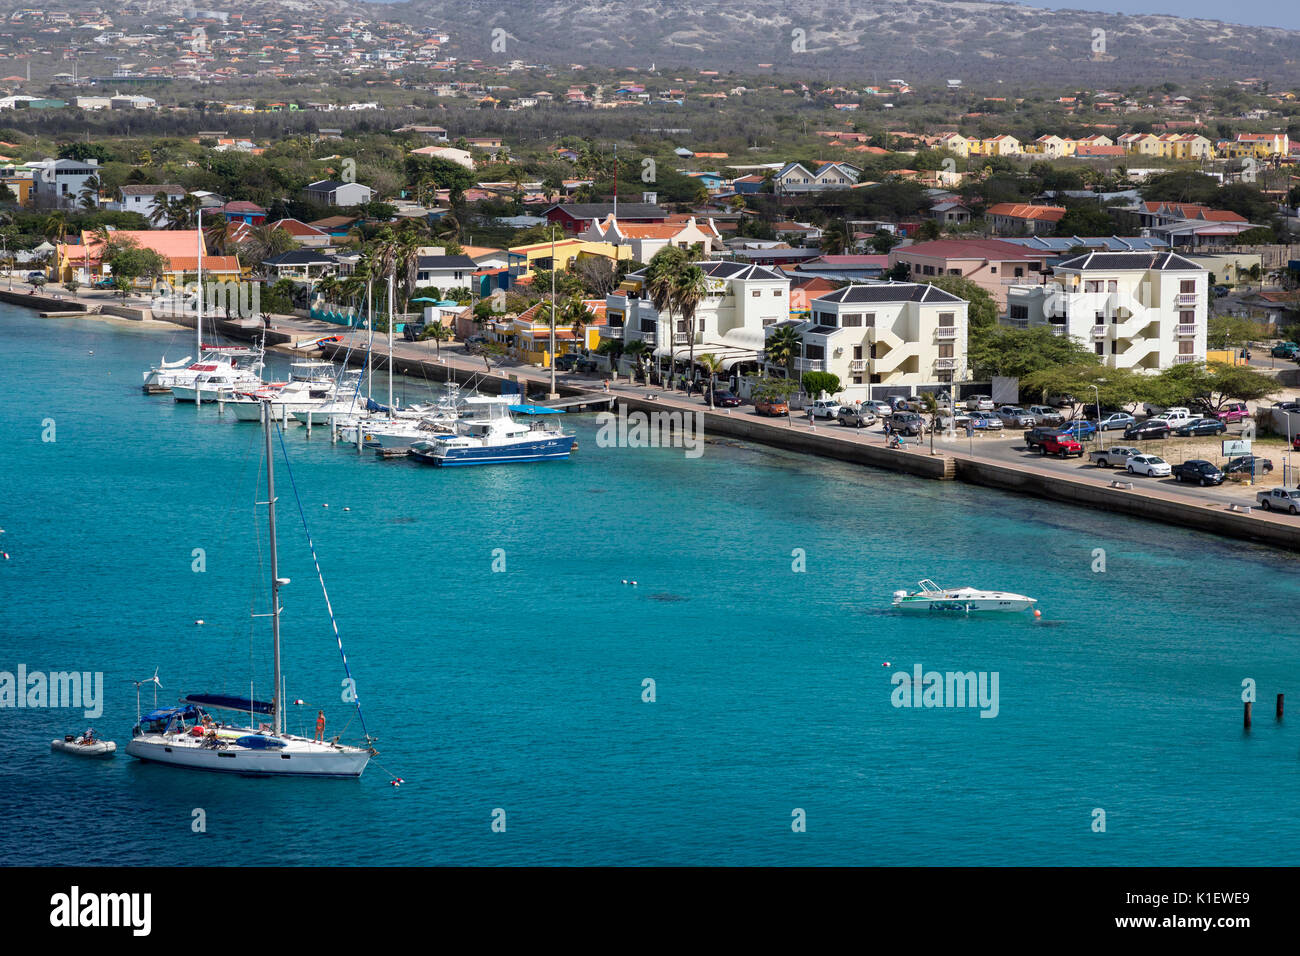 Kralendijk, Bonaire, Antilles néerlandaises sous le vent. Banque D'Images